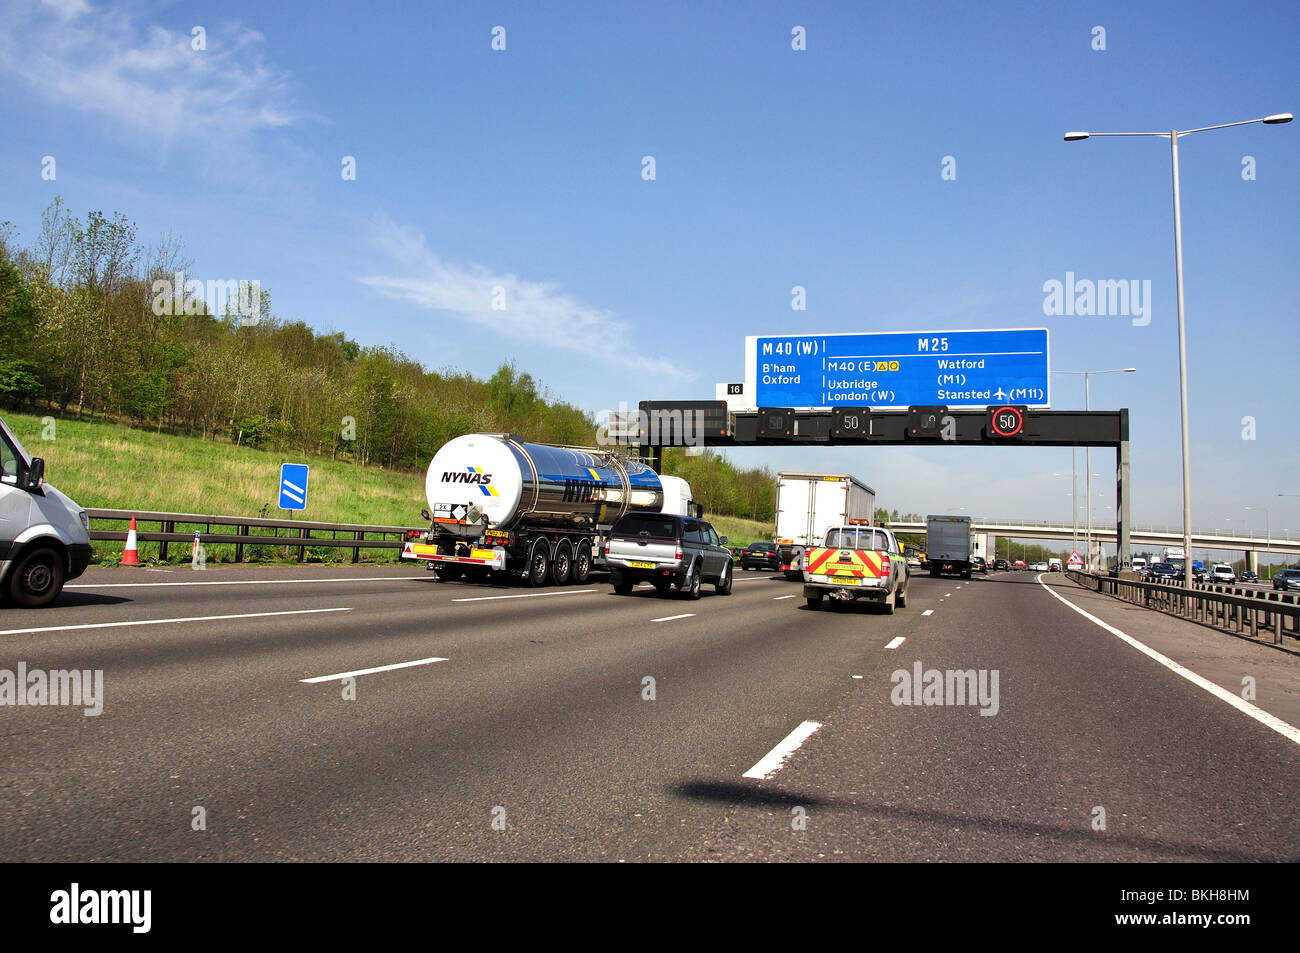 M25 Autostrada alla M40 Junction, Greater London, England, Regno Unito Foto Stock